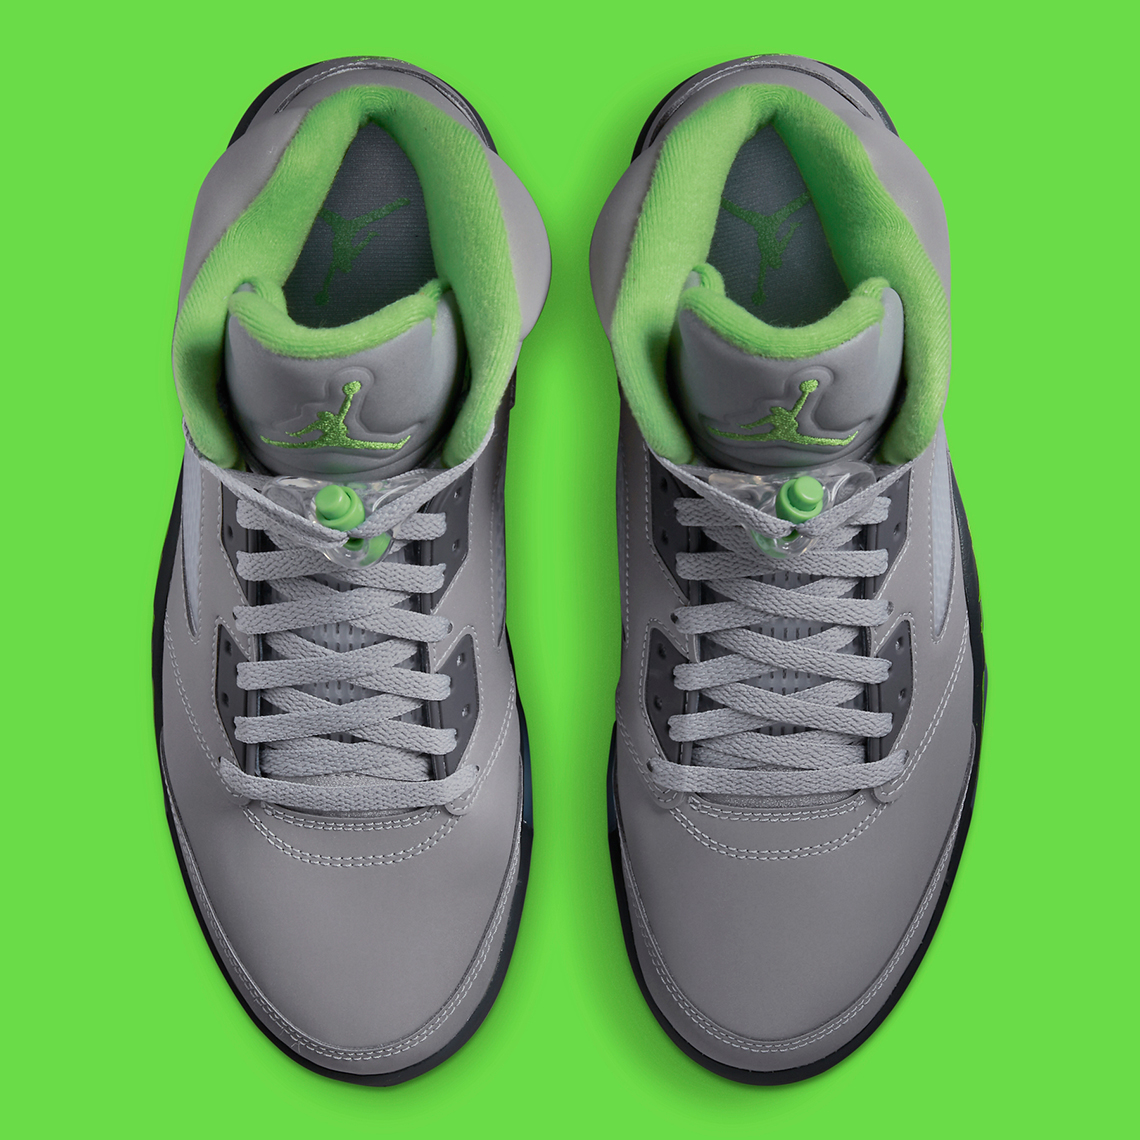 Air Jordan 5 Green Bean DM9014-003 Release Date | SneakerNews.com